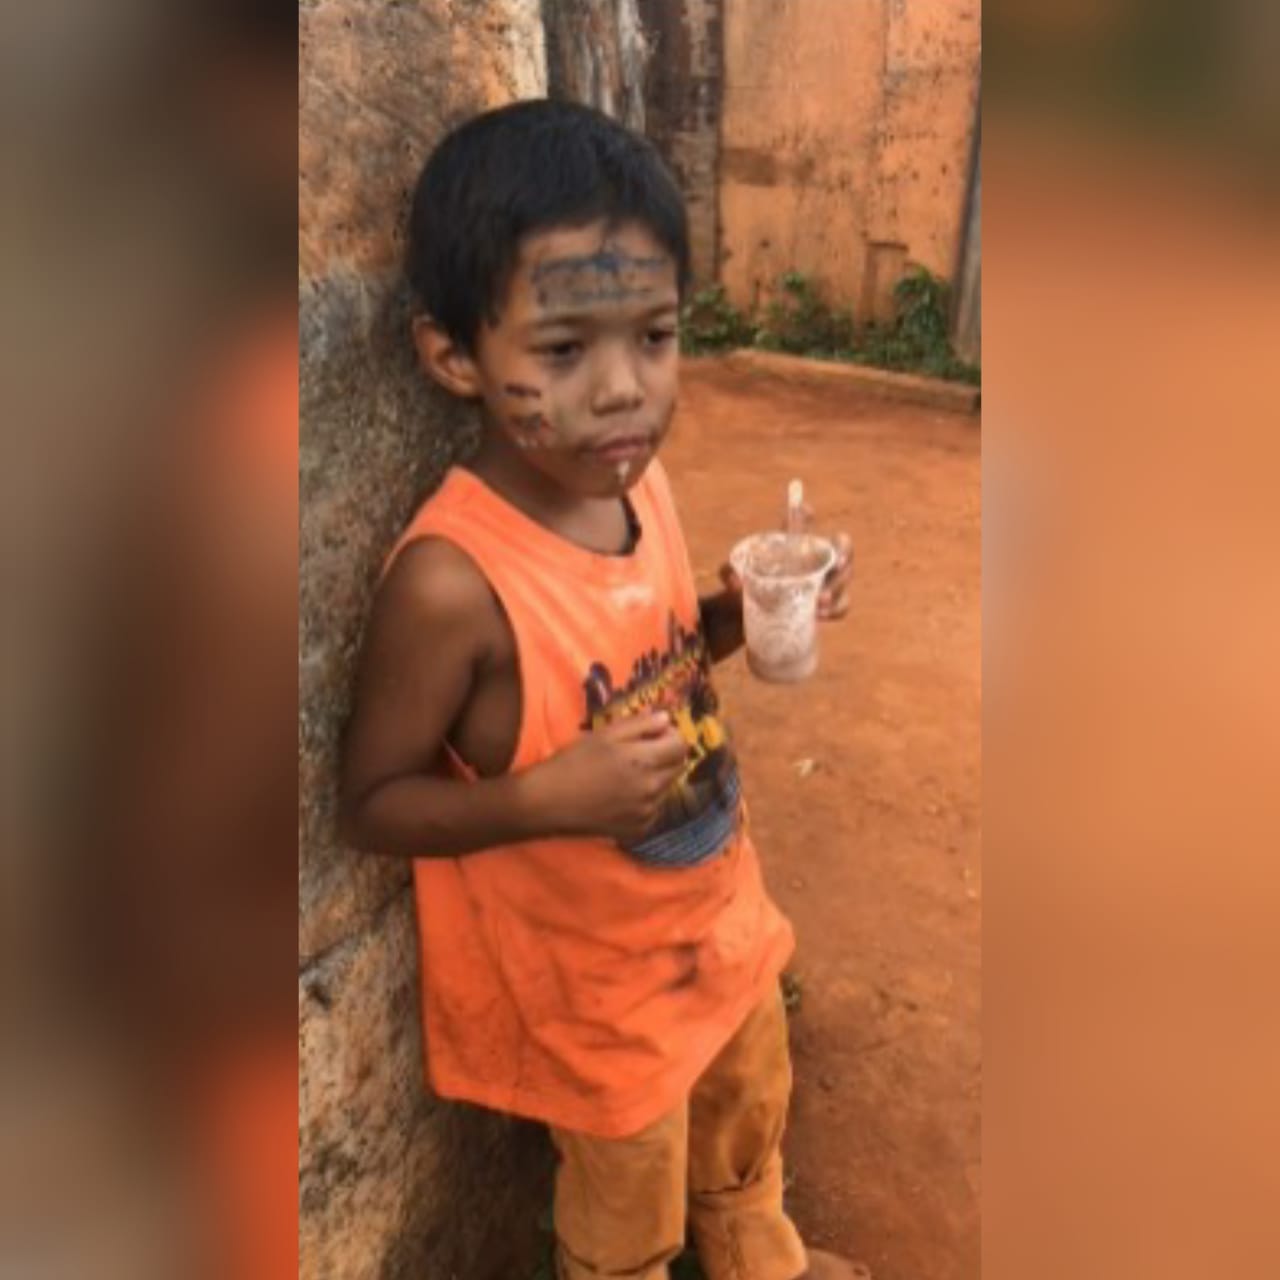 O menino Danilo de Souza Silva, que foi encontrado morto em uma mata, será sepultado nesta quarta-feira (29), no Cemitério Vale da Paz, em Goiânia. (Foto: reprodução)